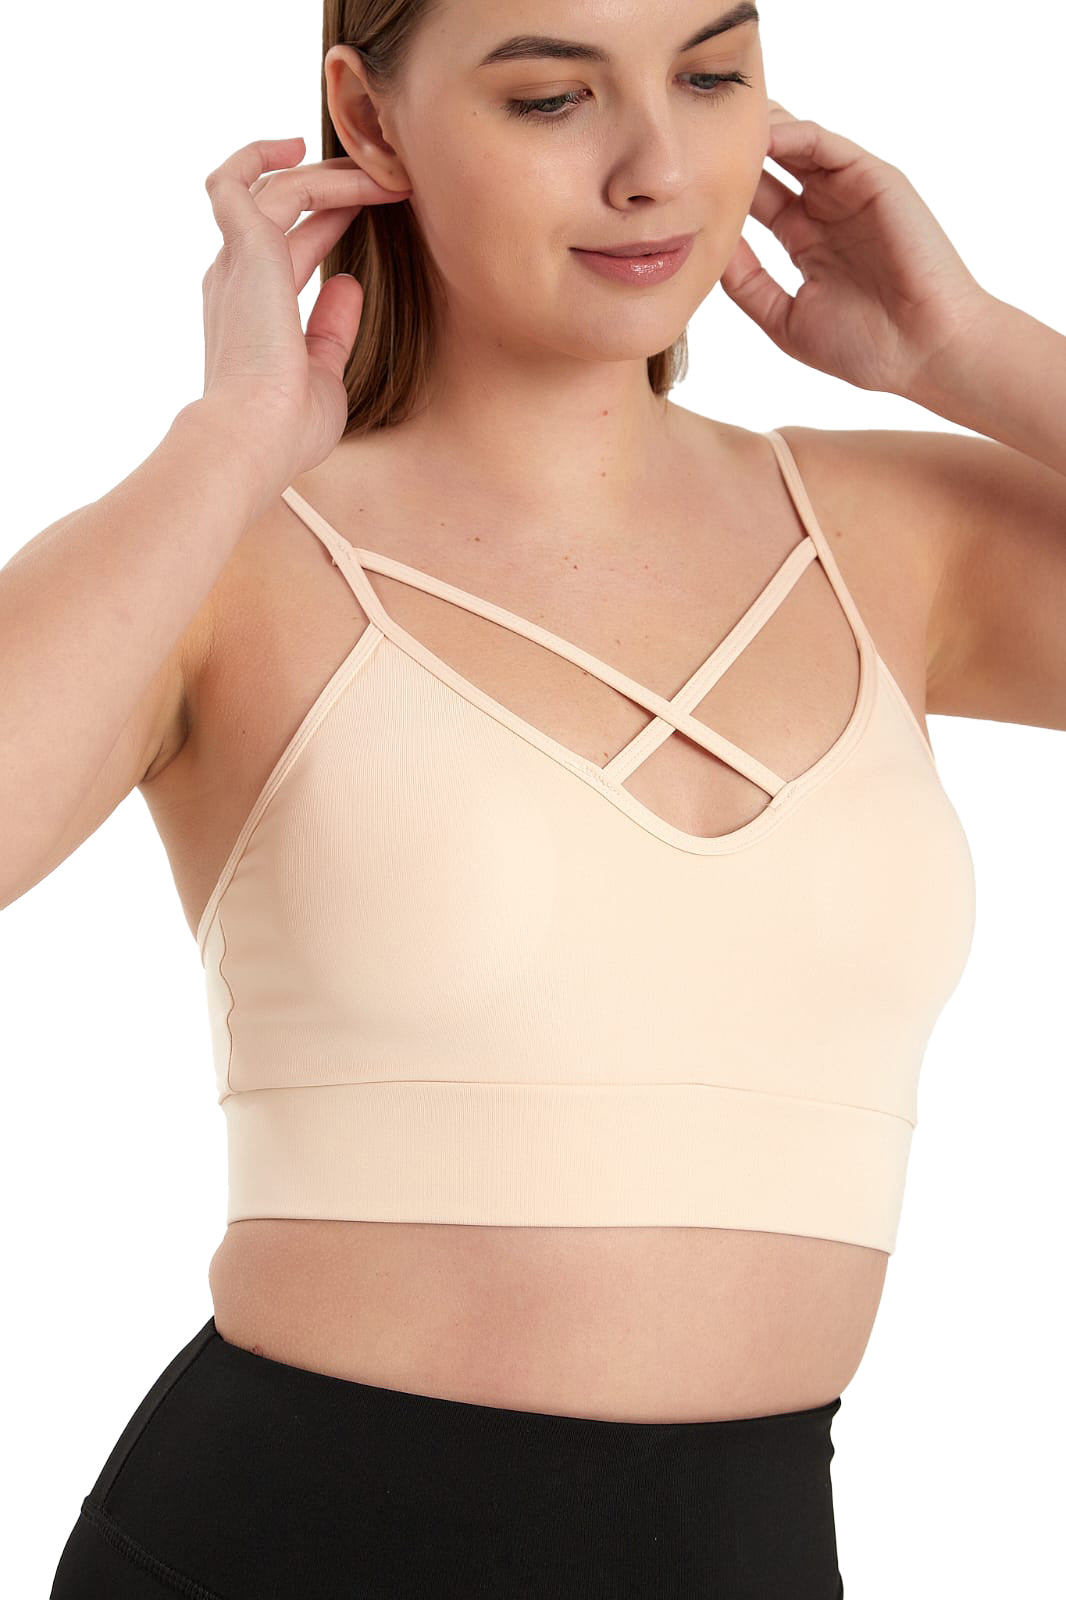 Padded Ladies Workout Wear, Crisscross Front Plunge Neck Top - NEW ARRIVALS! - Wear Sierra